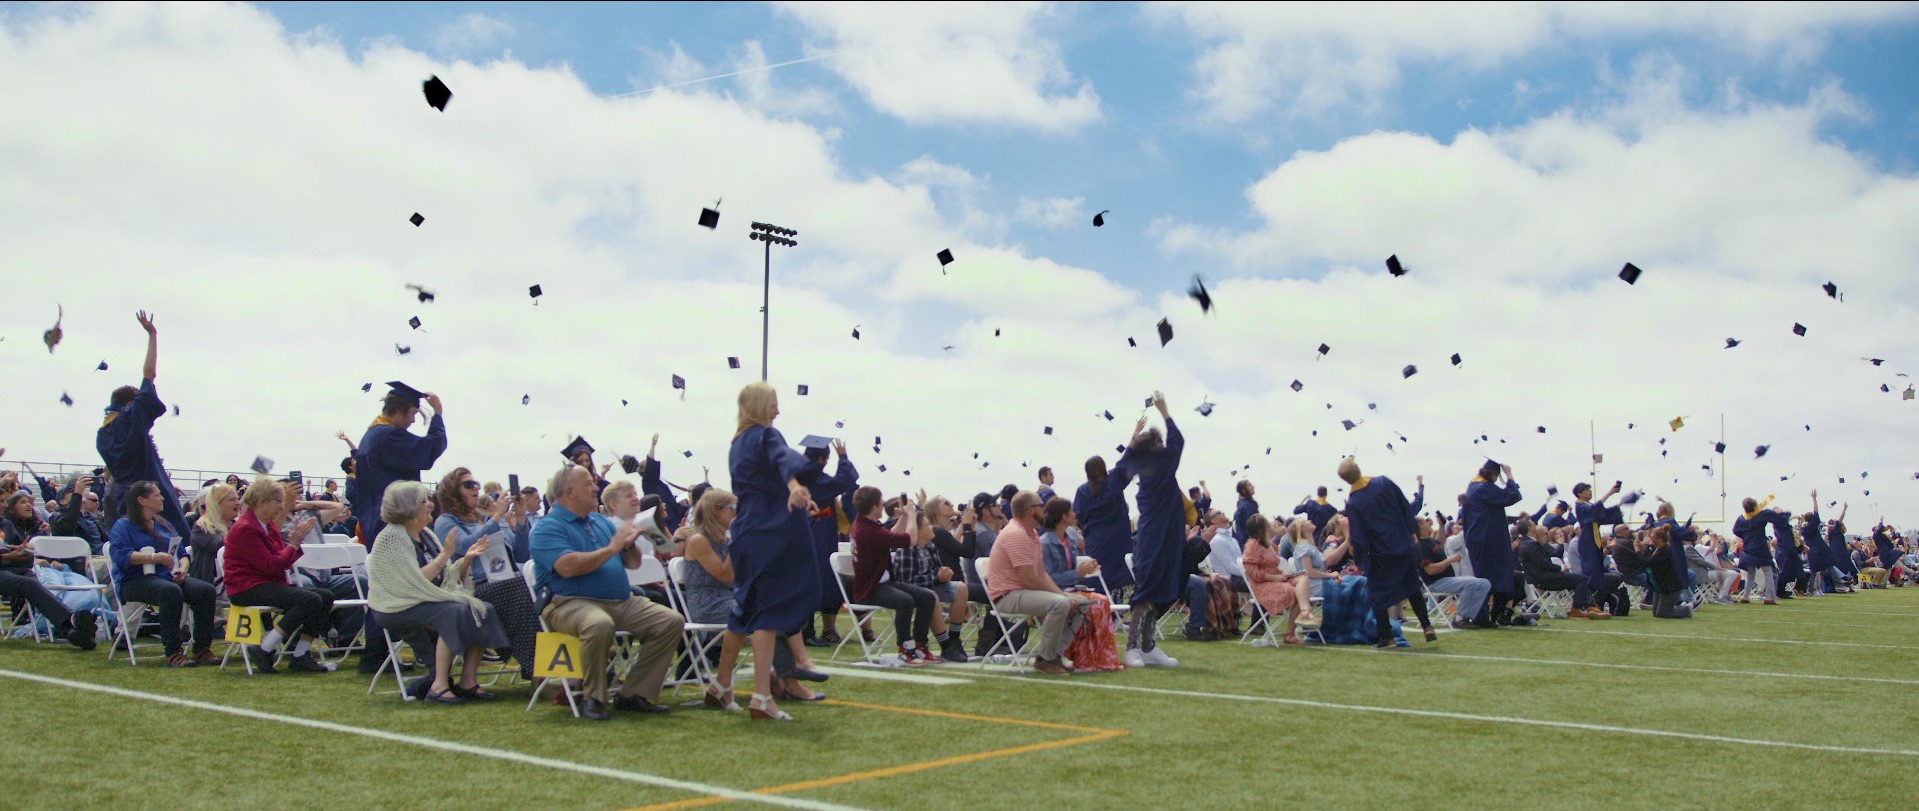 Graduados del Frederick High School lanzando sus birretes de graduación